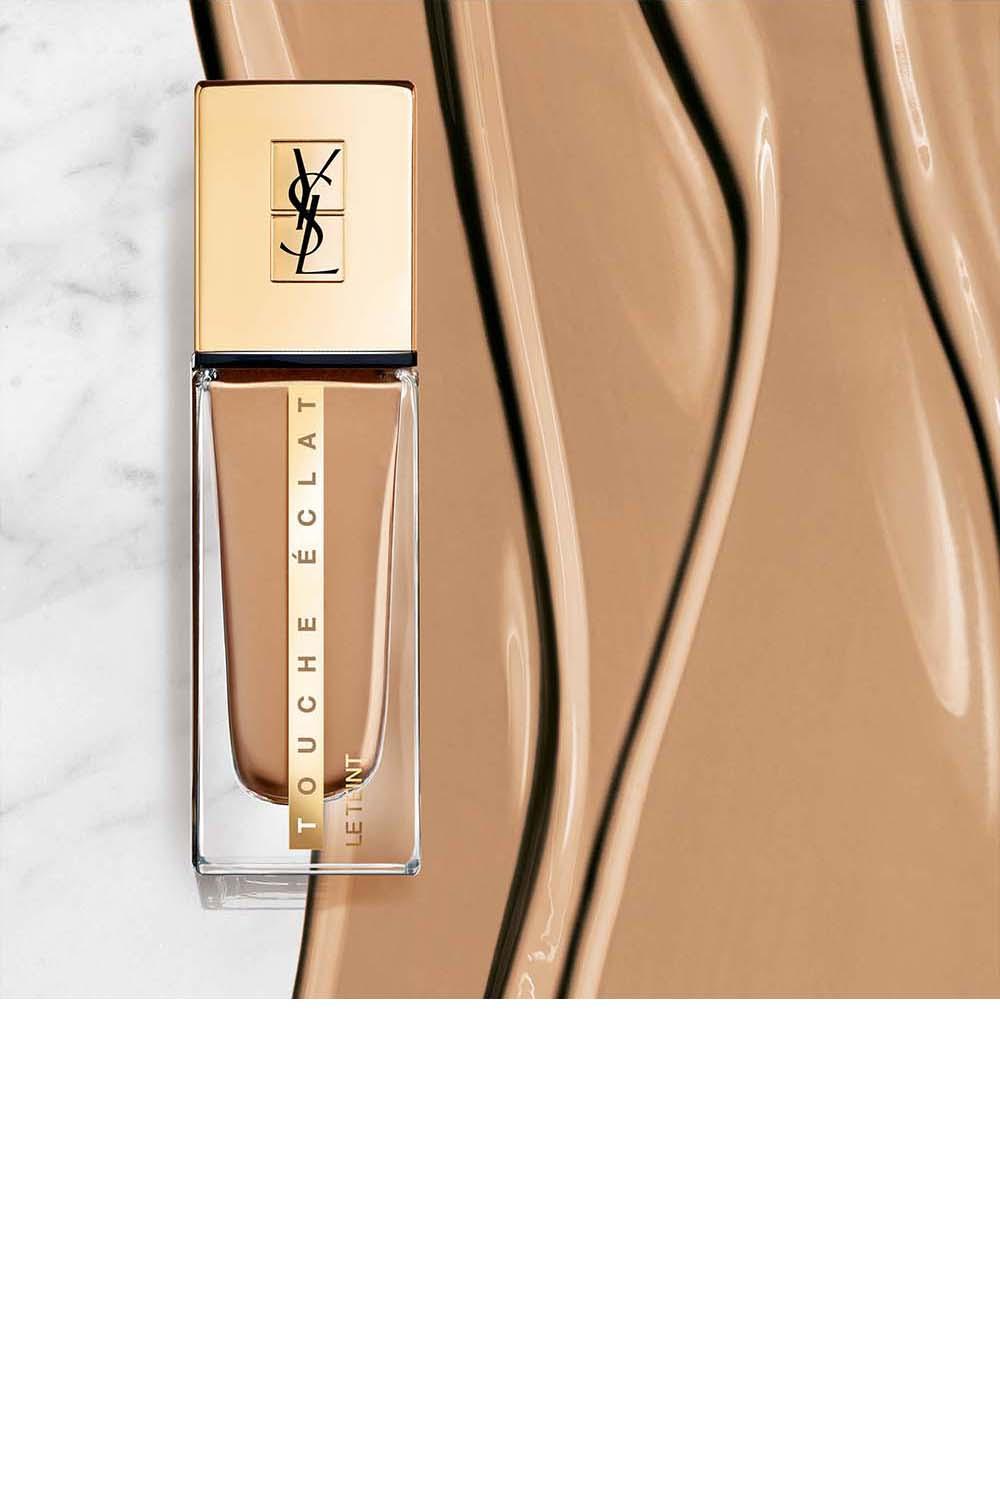 מייק אפ Touche Eclat Le Teint Long-Wear Glow עמיד במיוחד ומעניק כיסוי בינוני זוהר 25 מ"ל - MASHBIR//365